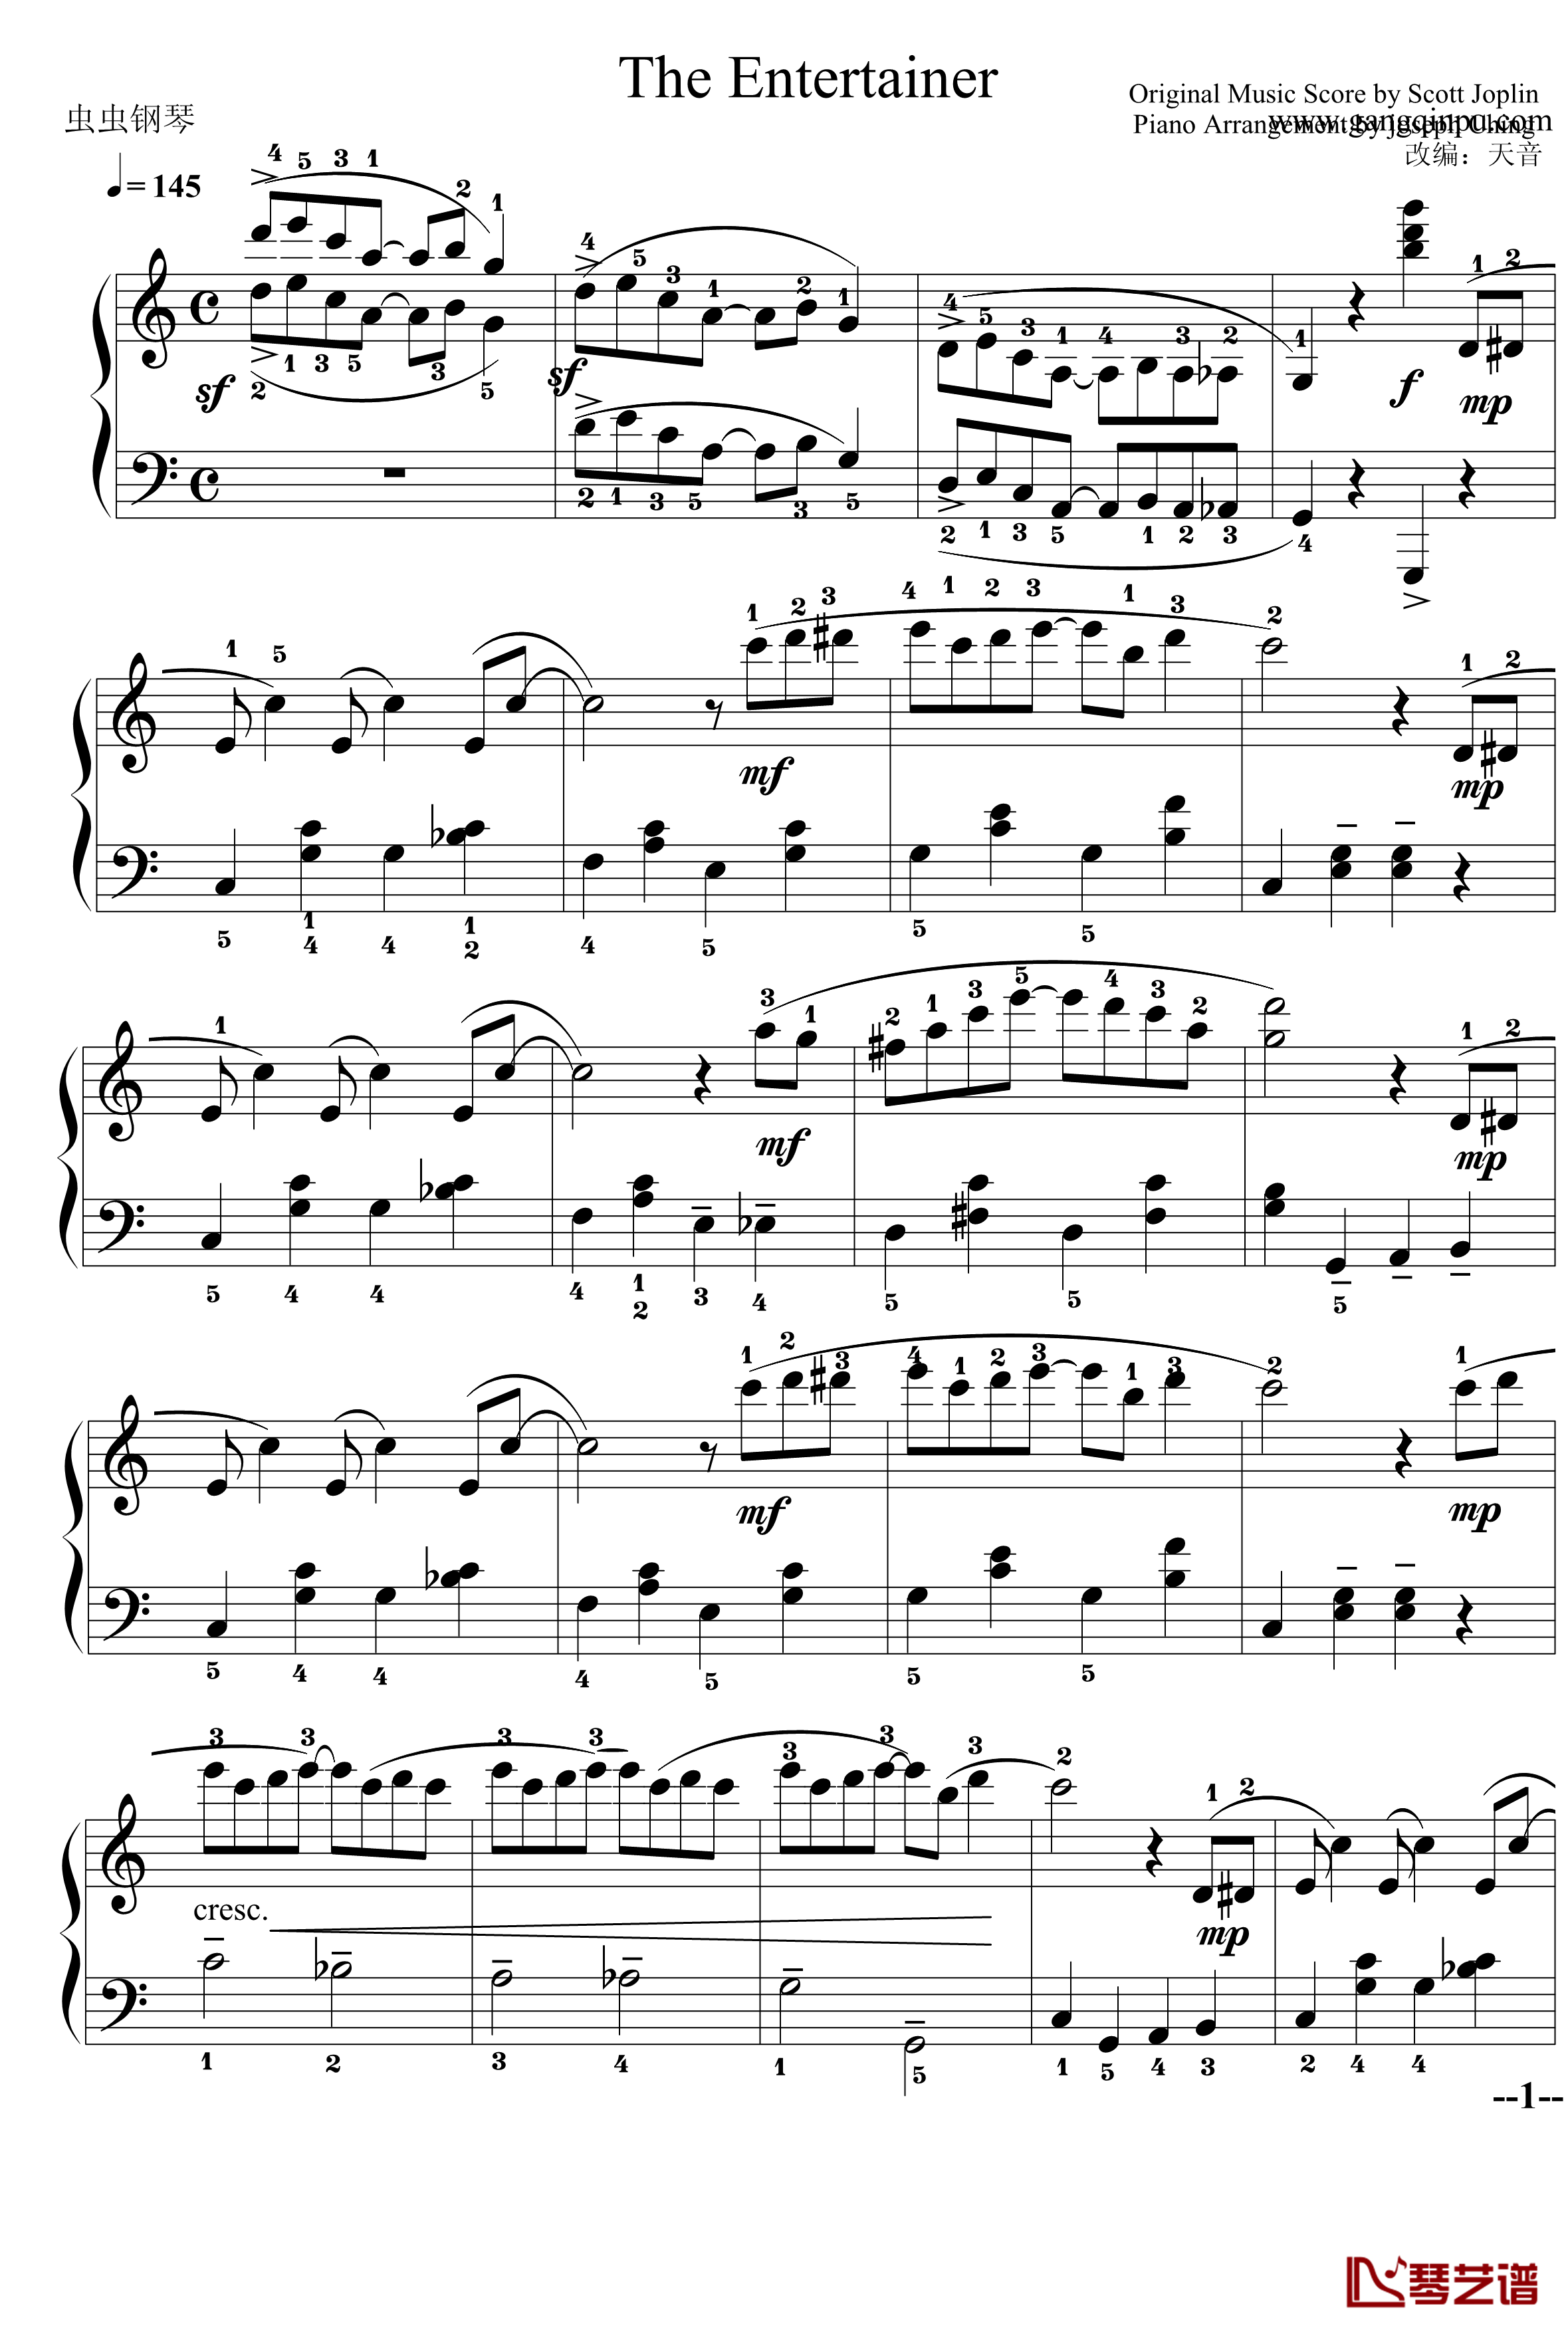 The Entertainer钢琴谱-简易完整版-Scott Joplin1